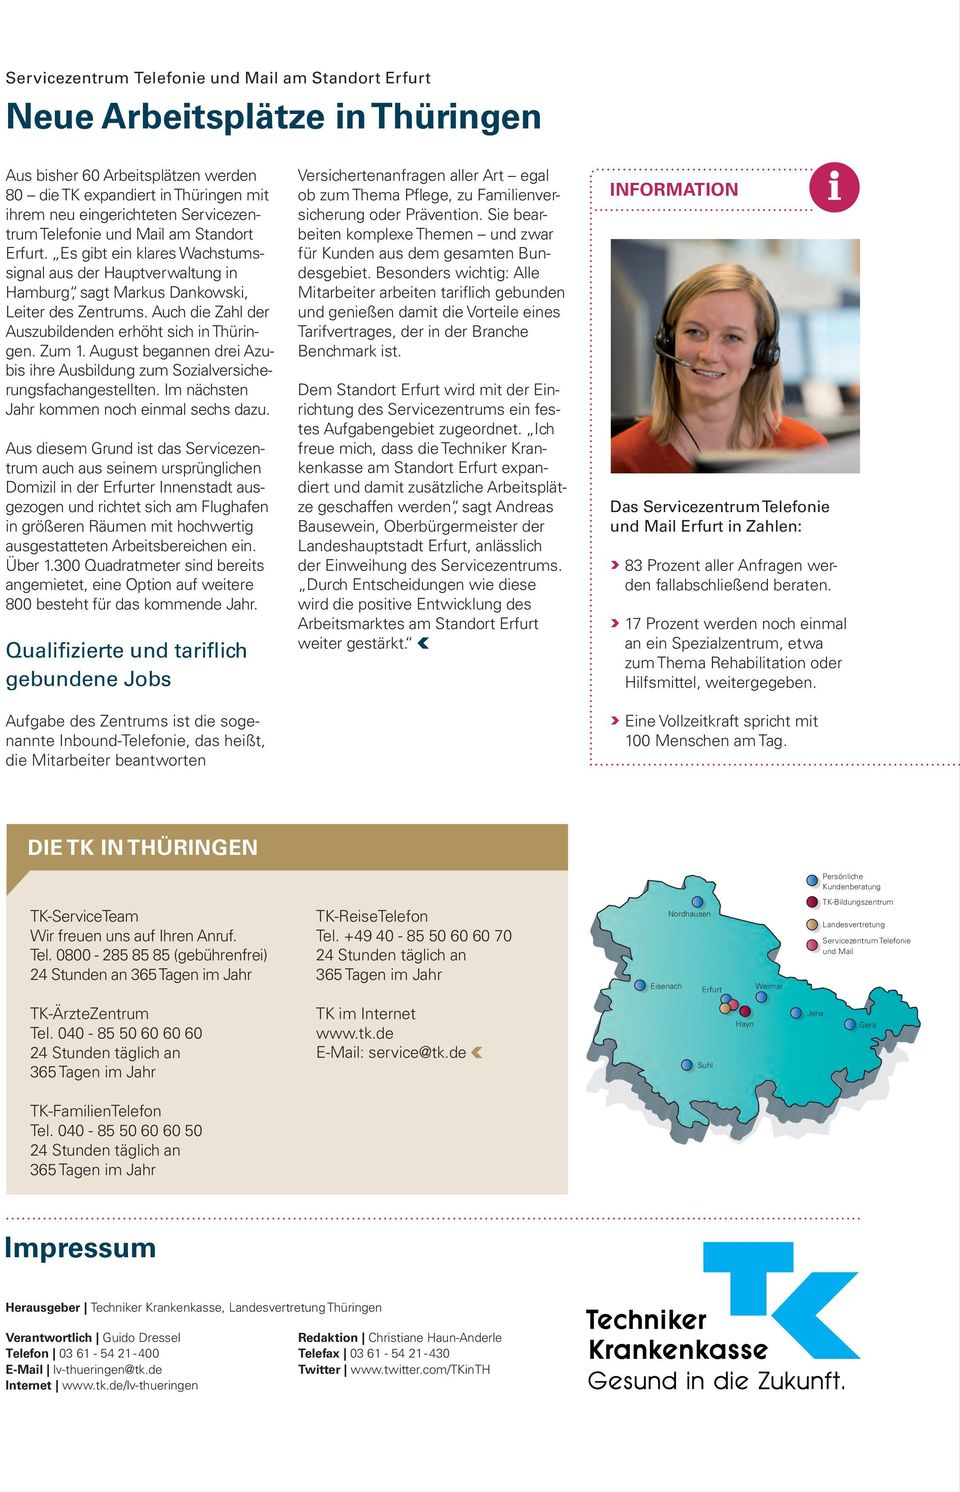 Auch die Zahl der Auszubildenden erhöht sich in Thüringen. Zum 1. August begannen drei Azubis ihre Ausbildung zum Sozialversicherungsfachangestellten. Im nächsten Jahr kommen noch einmal sechs dazu.